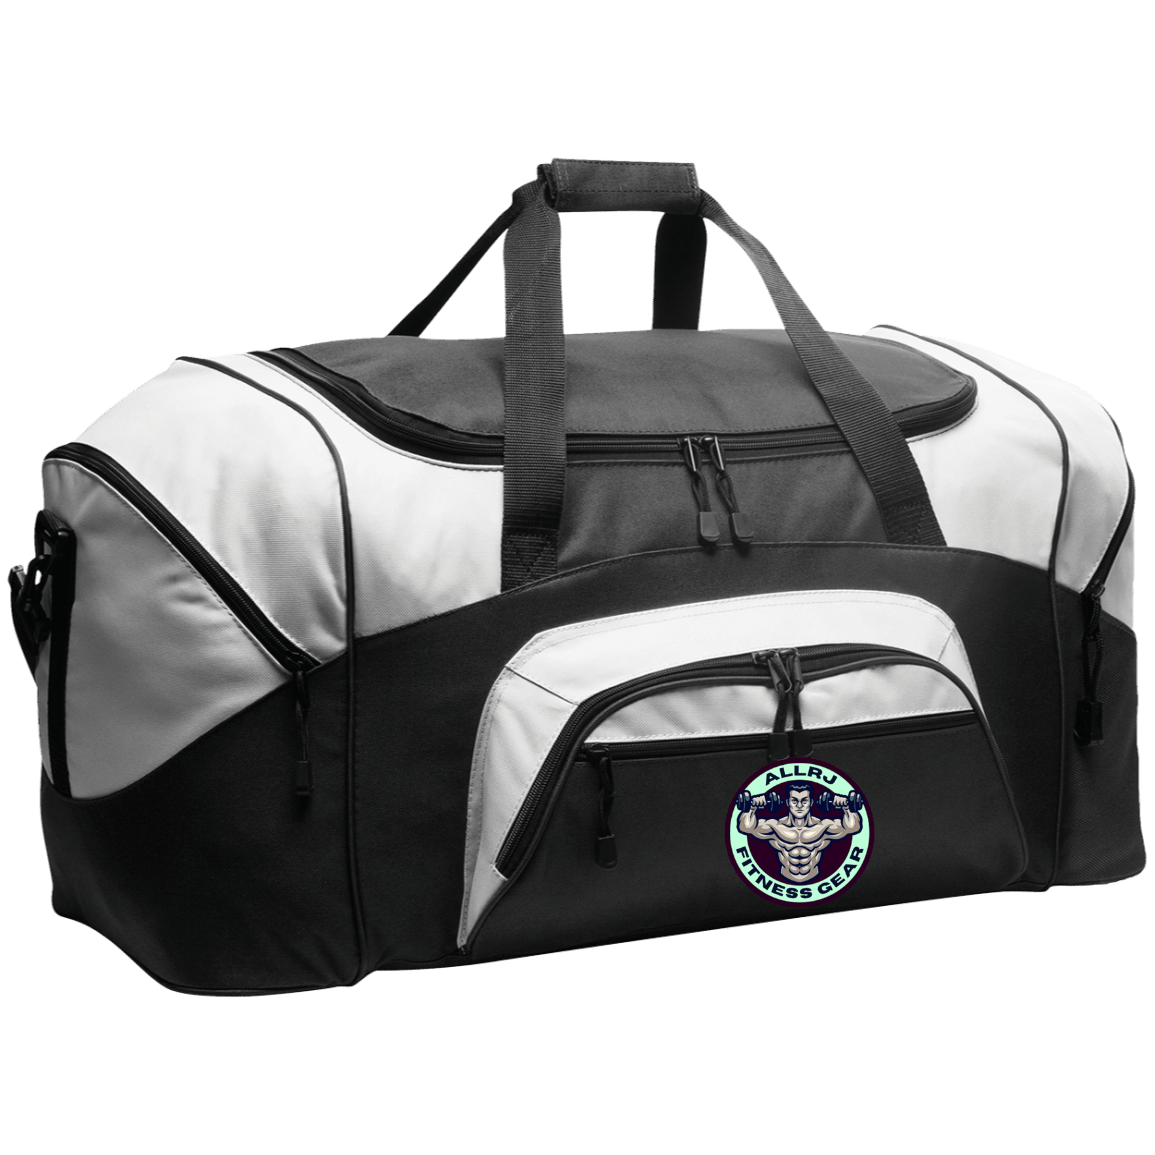 Allrj Gym Gains Duffel Bag Black/Gray One Size